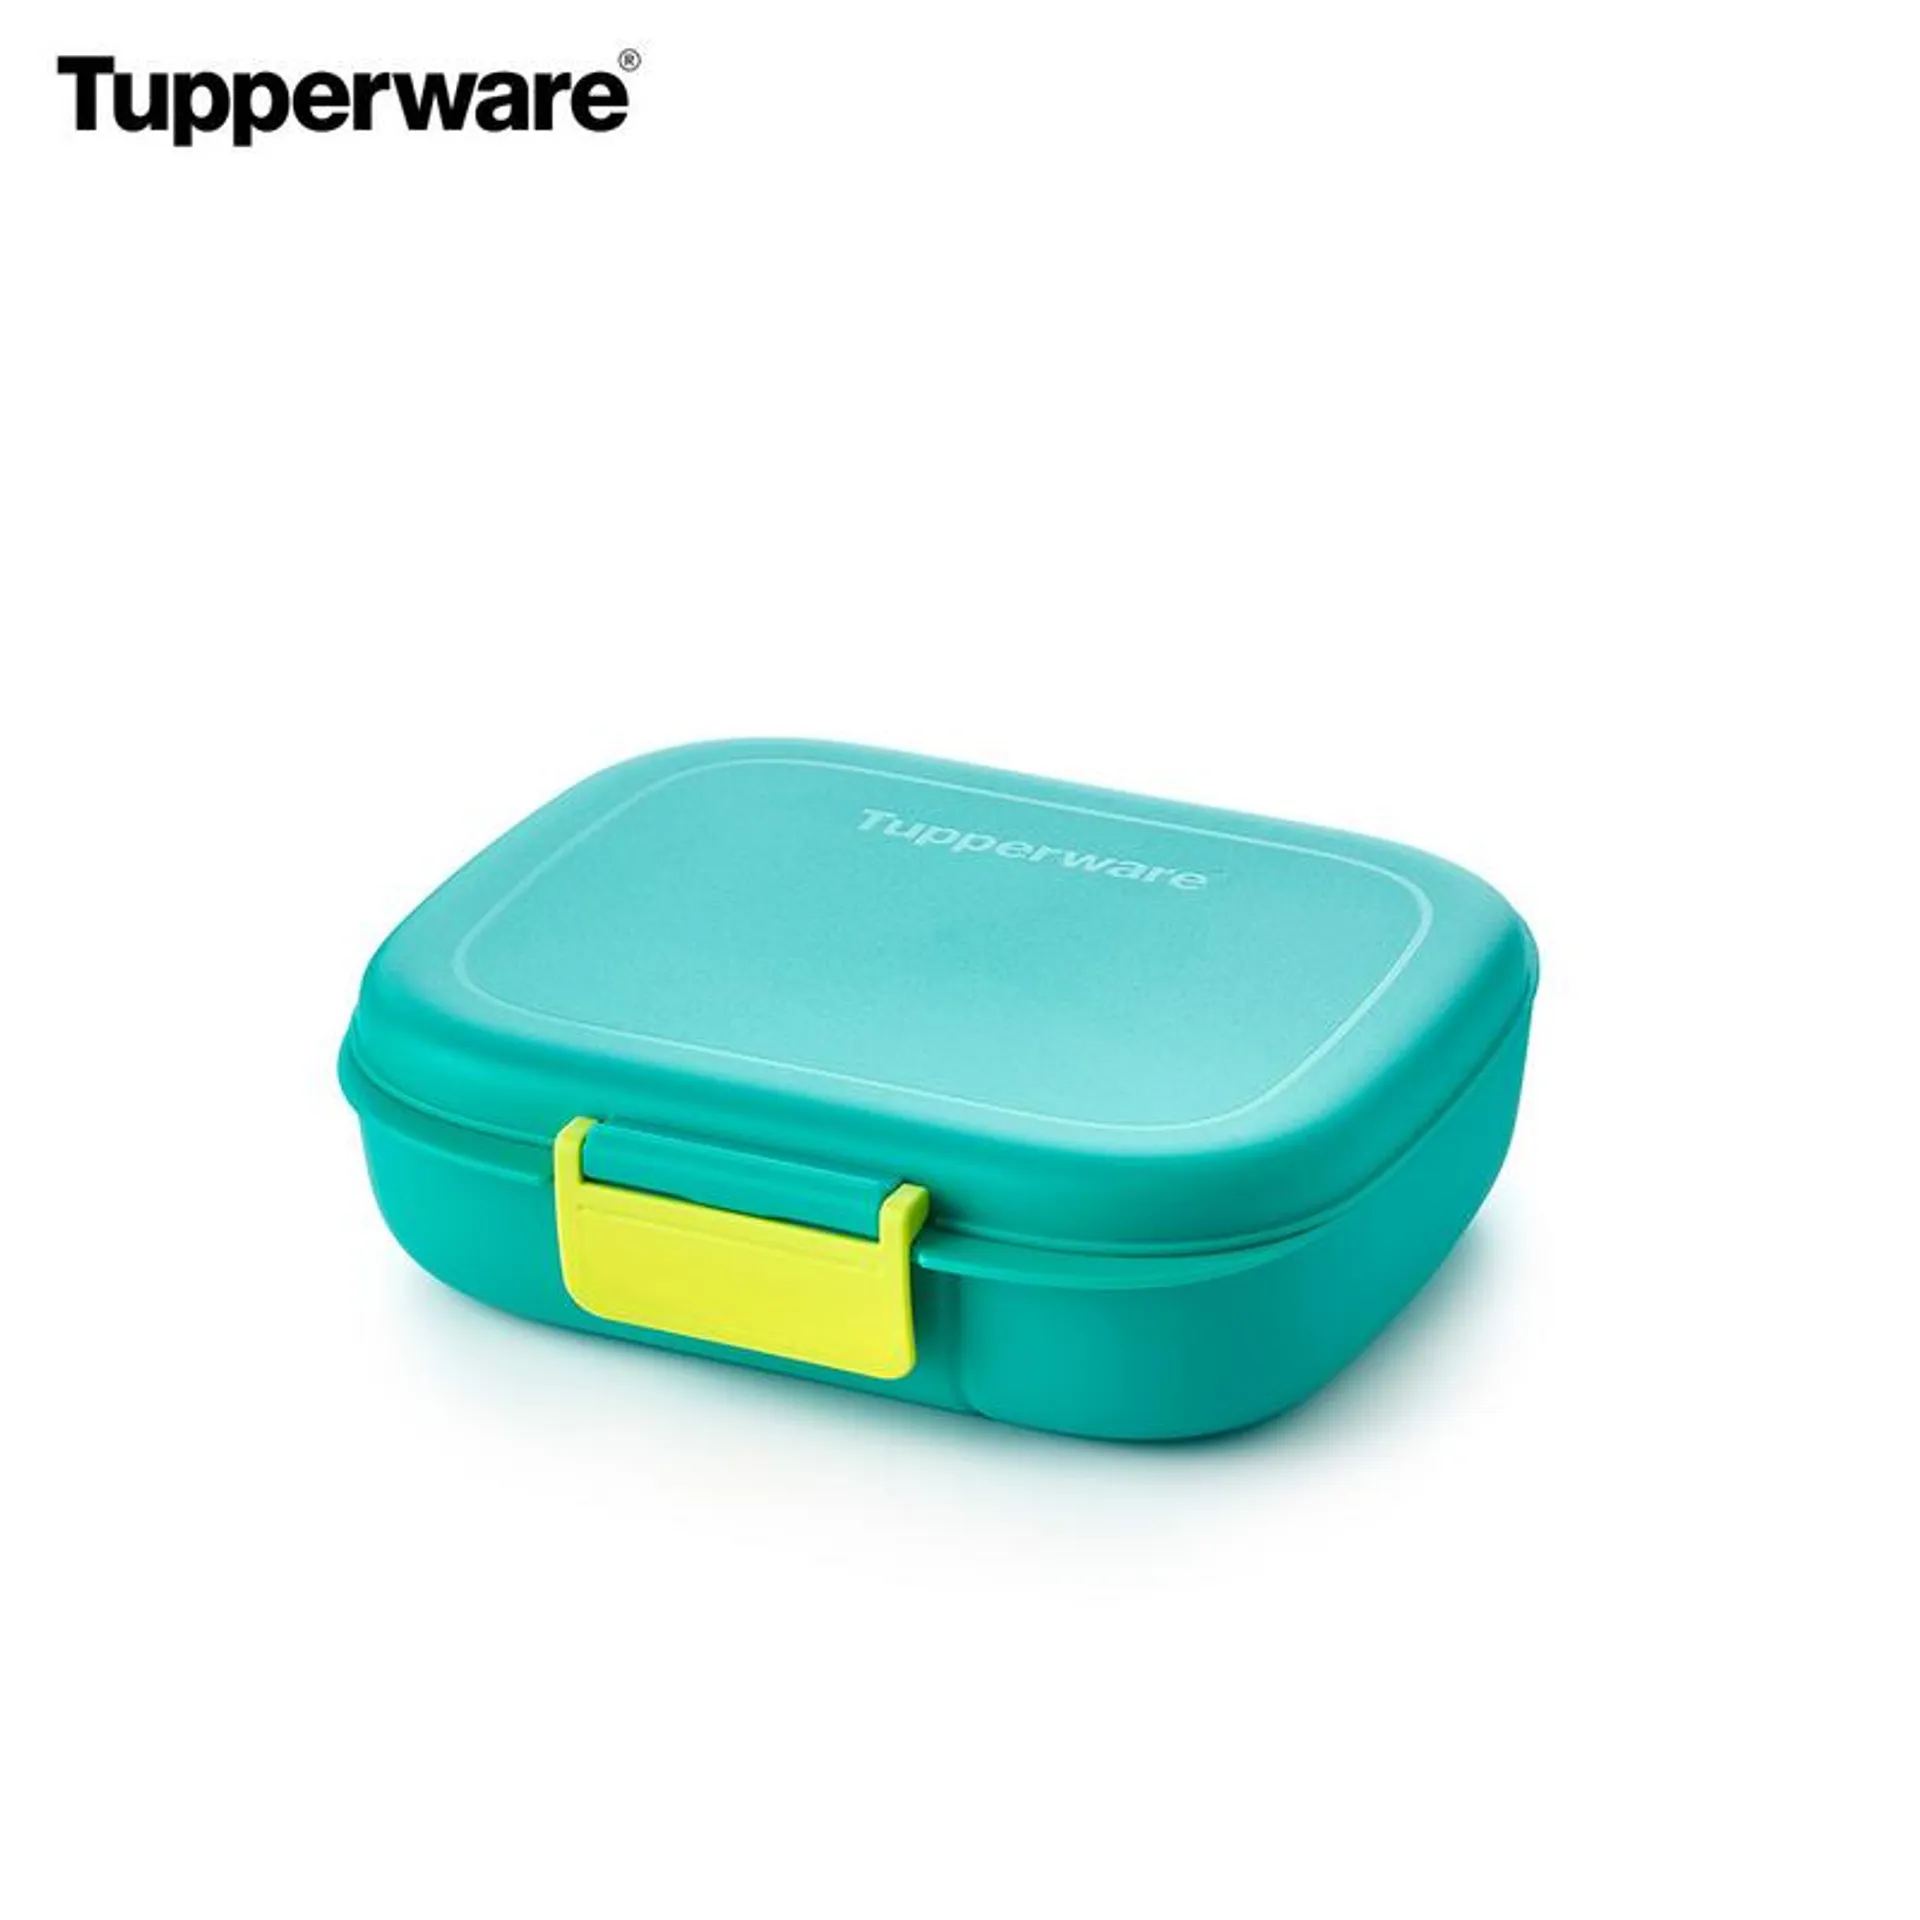 Llevar tu almuerzo en tus desplazamientos ahora es más fácil con la nueva lonchera de Tupperware.